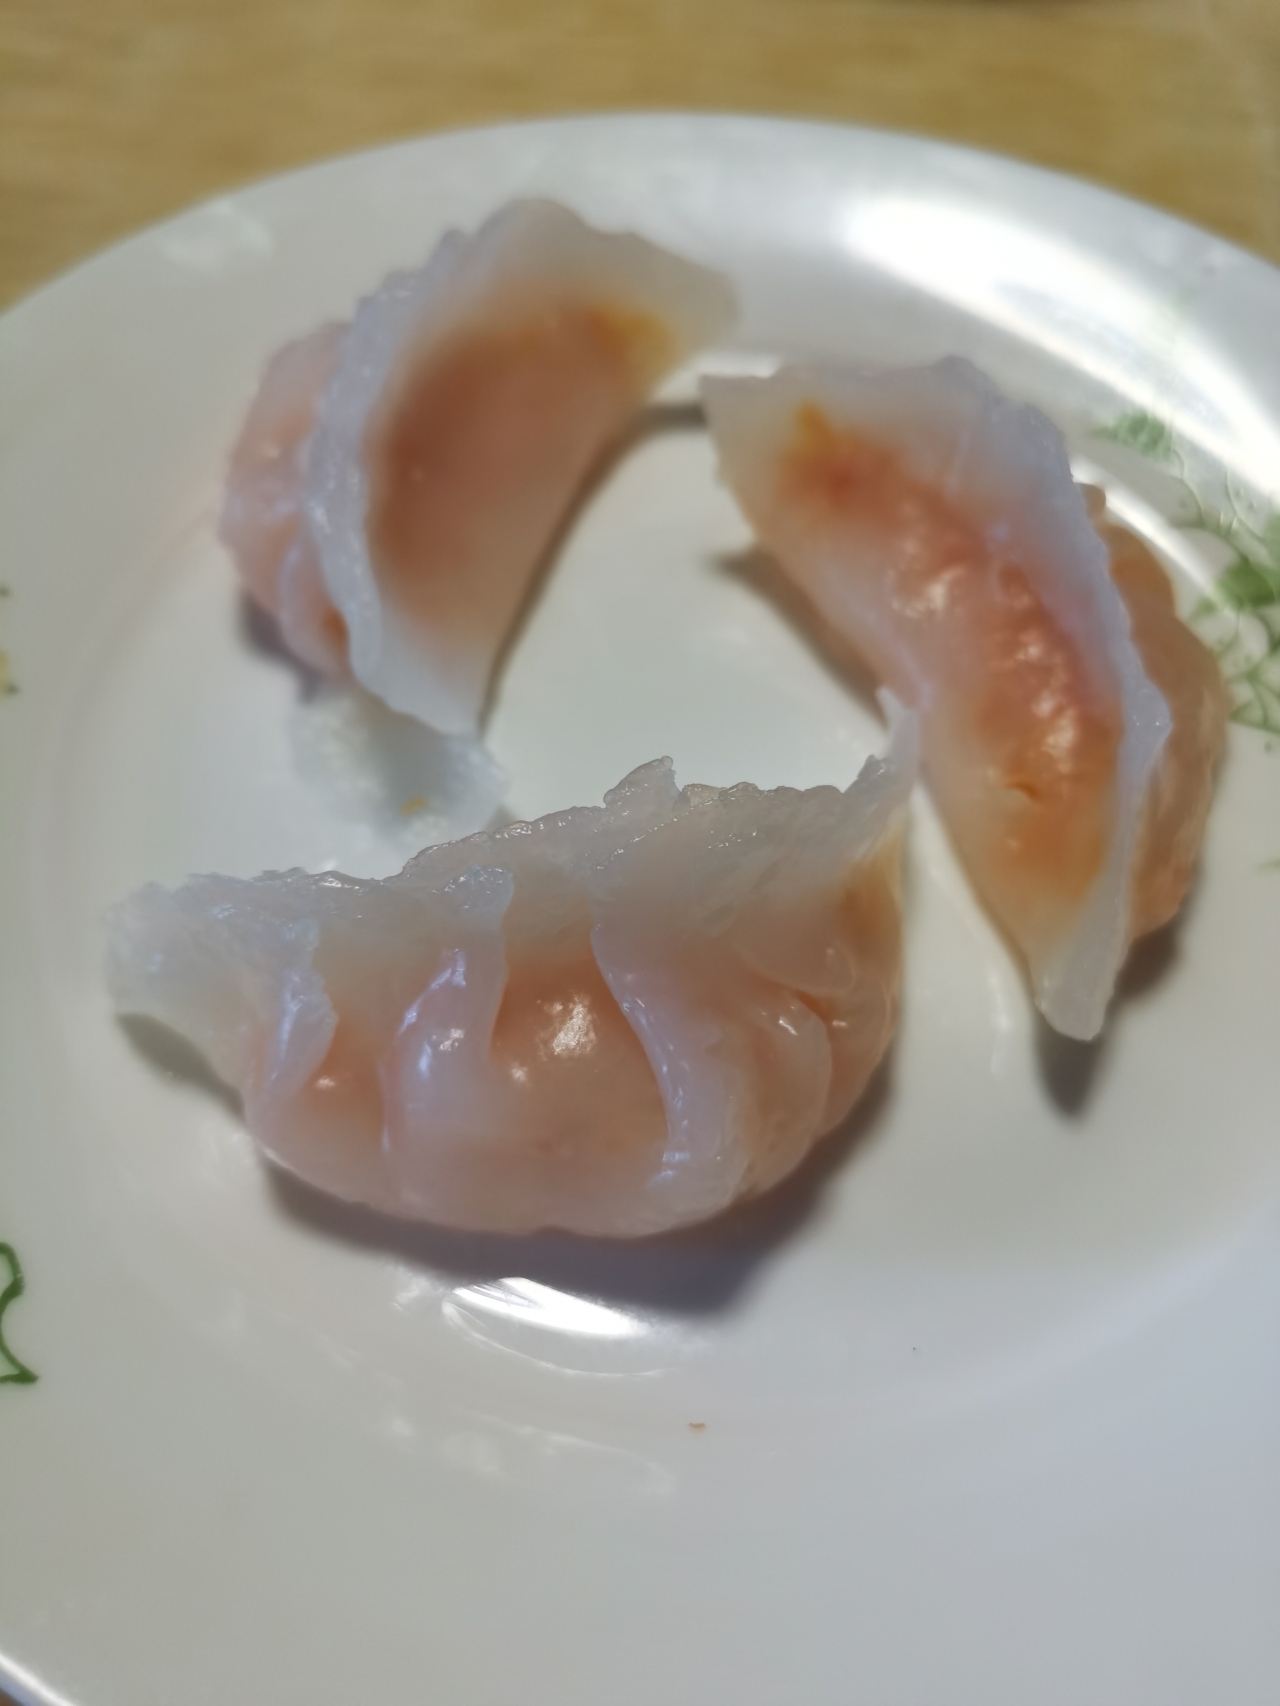 水晶虾饺皇